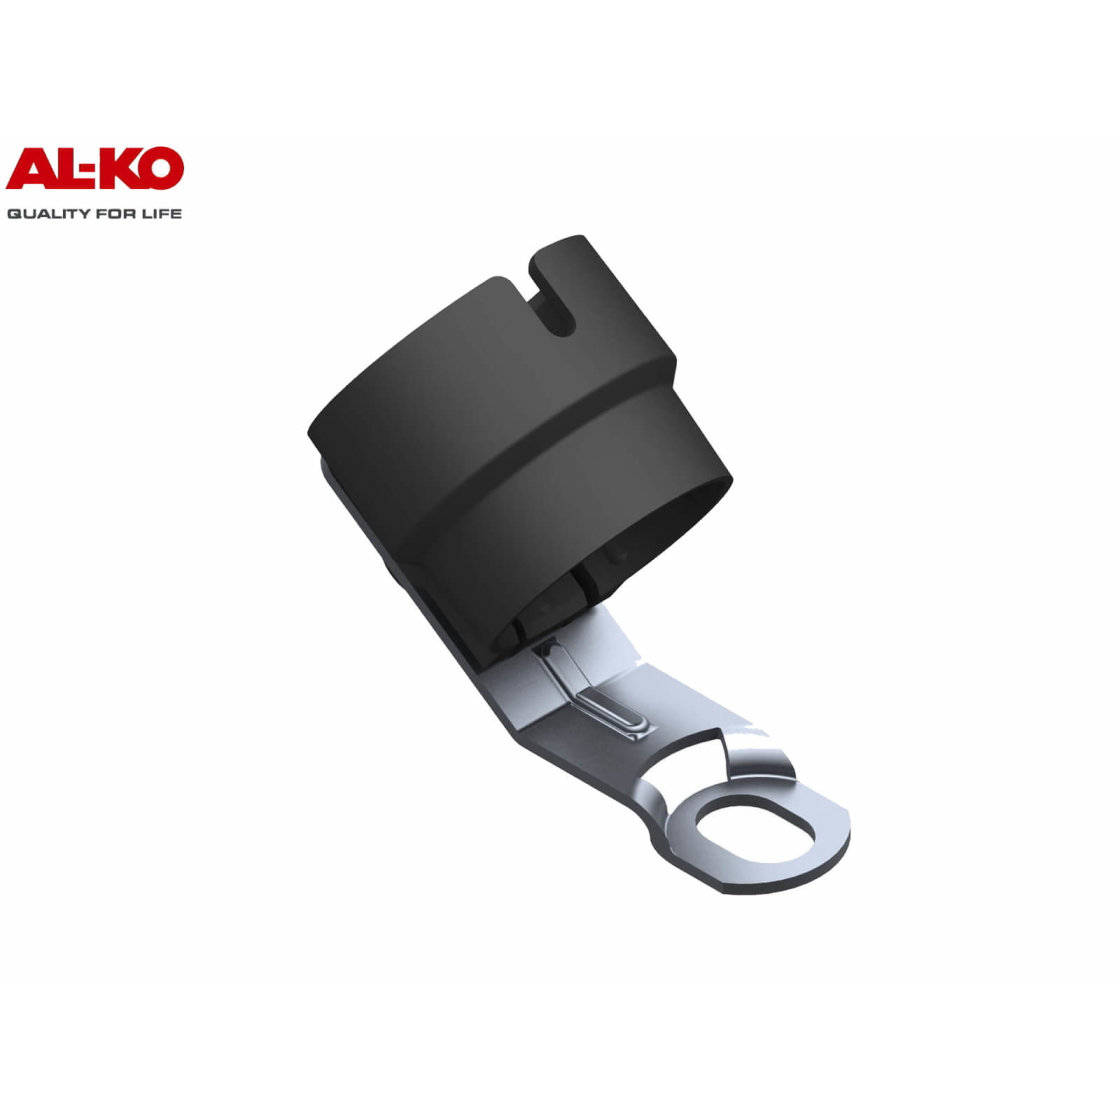 ALKO Steckerhalter schwarz geeignet für 7 und 13 polige Stecker neues Modell 